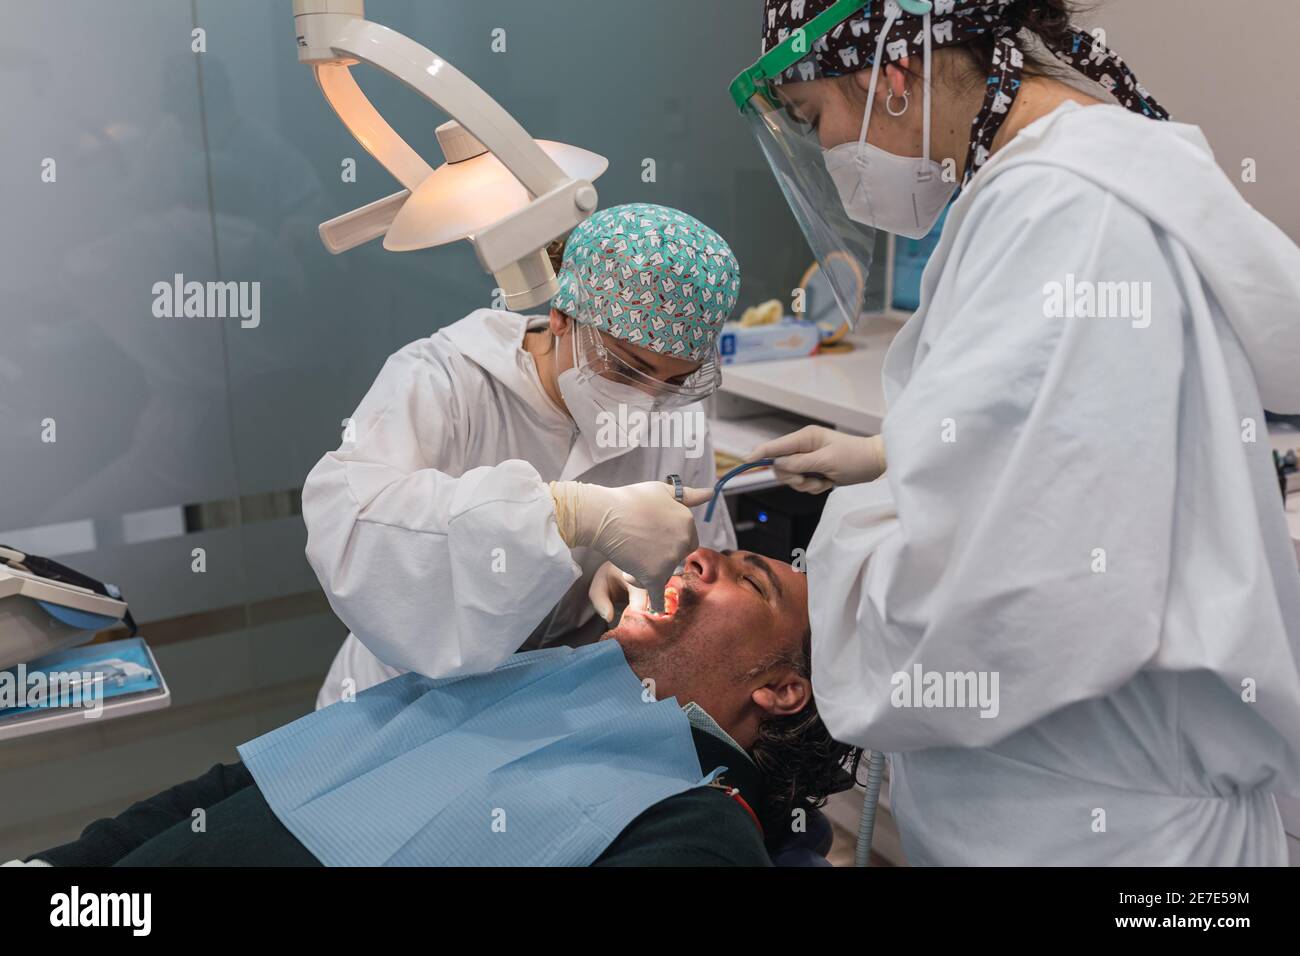 Chirurgo dentale che inietta anestesia in bocca. Tre persone. Concetto di salute dentale Foto Stock